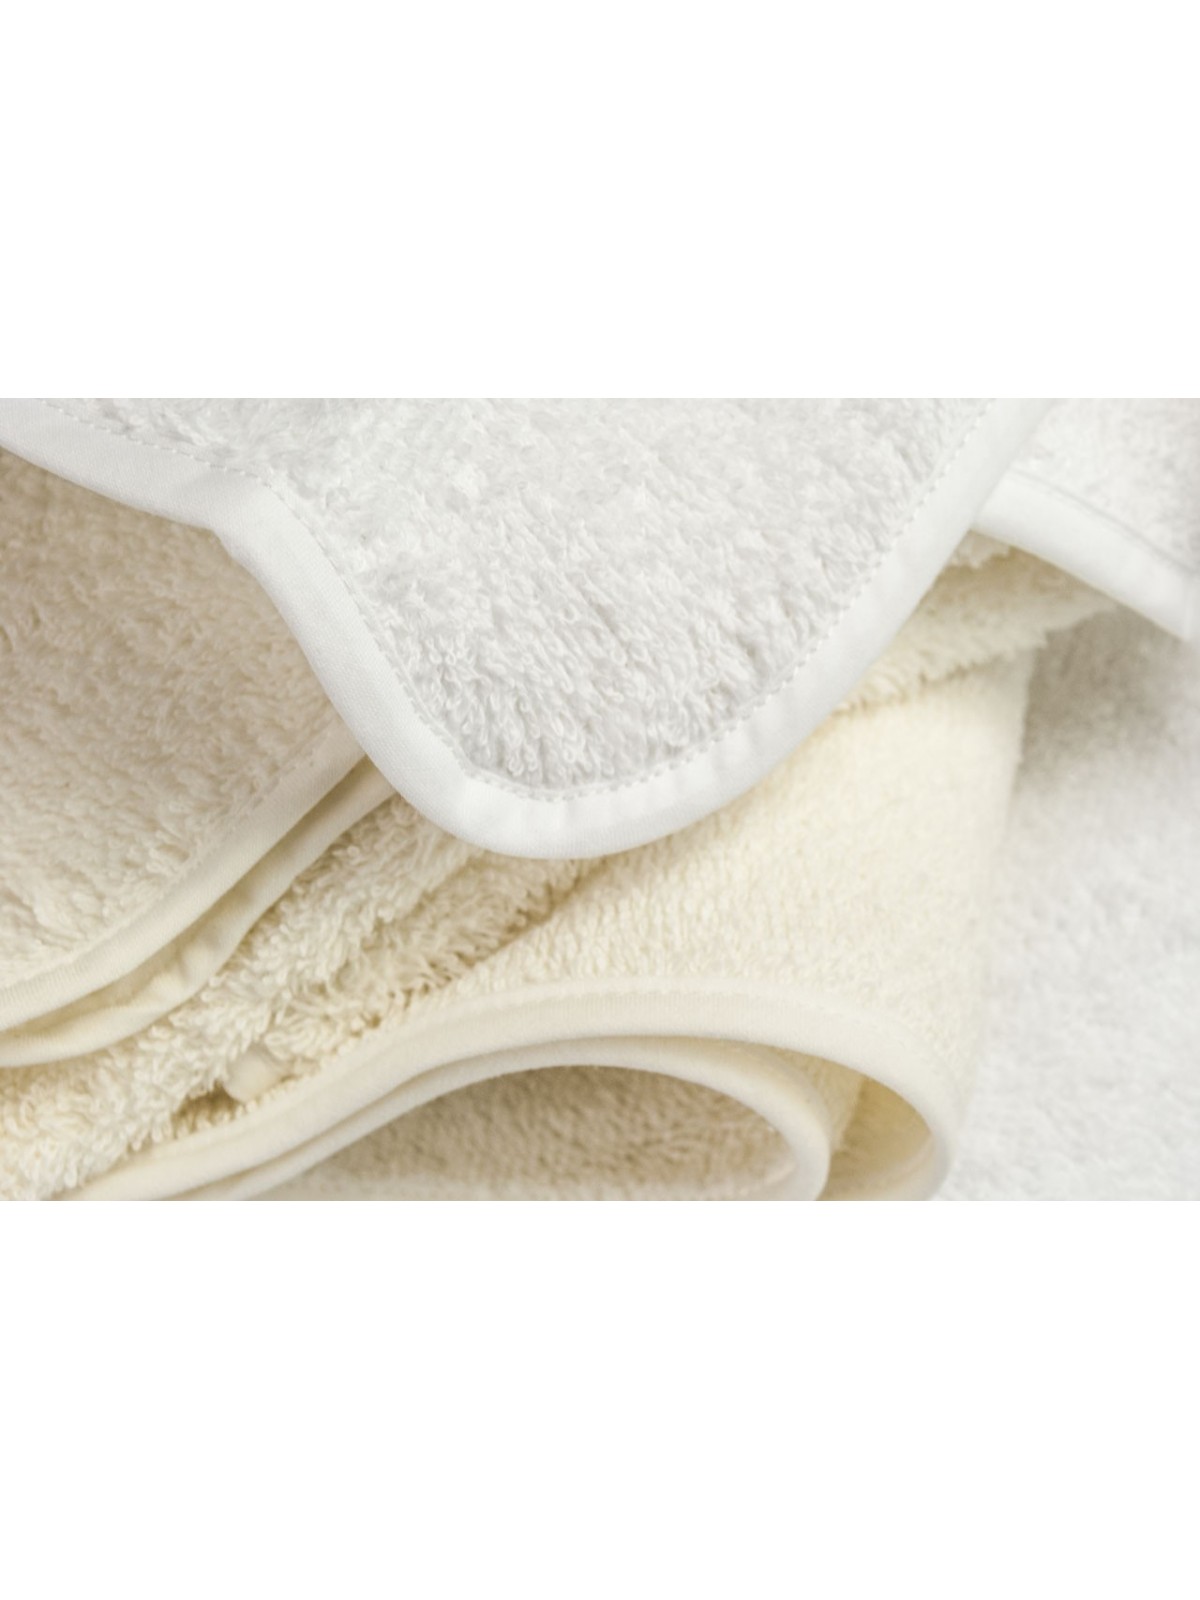 Weiße oder elfenbeinfarbene Handtücher aller Größen: Gesichts- und Bidettuch, normales und riesiges Duschtuch